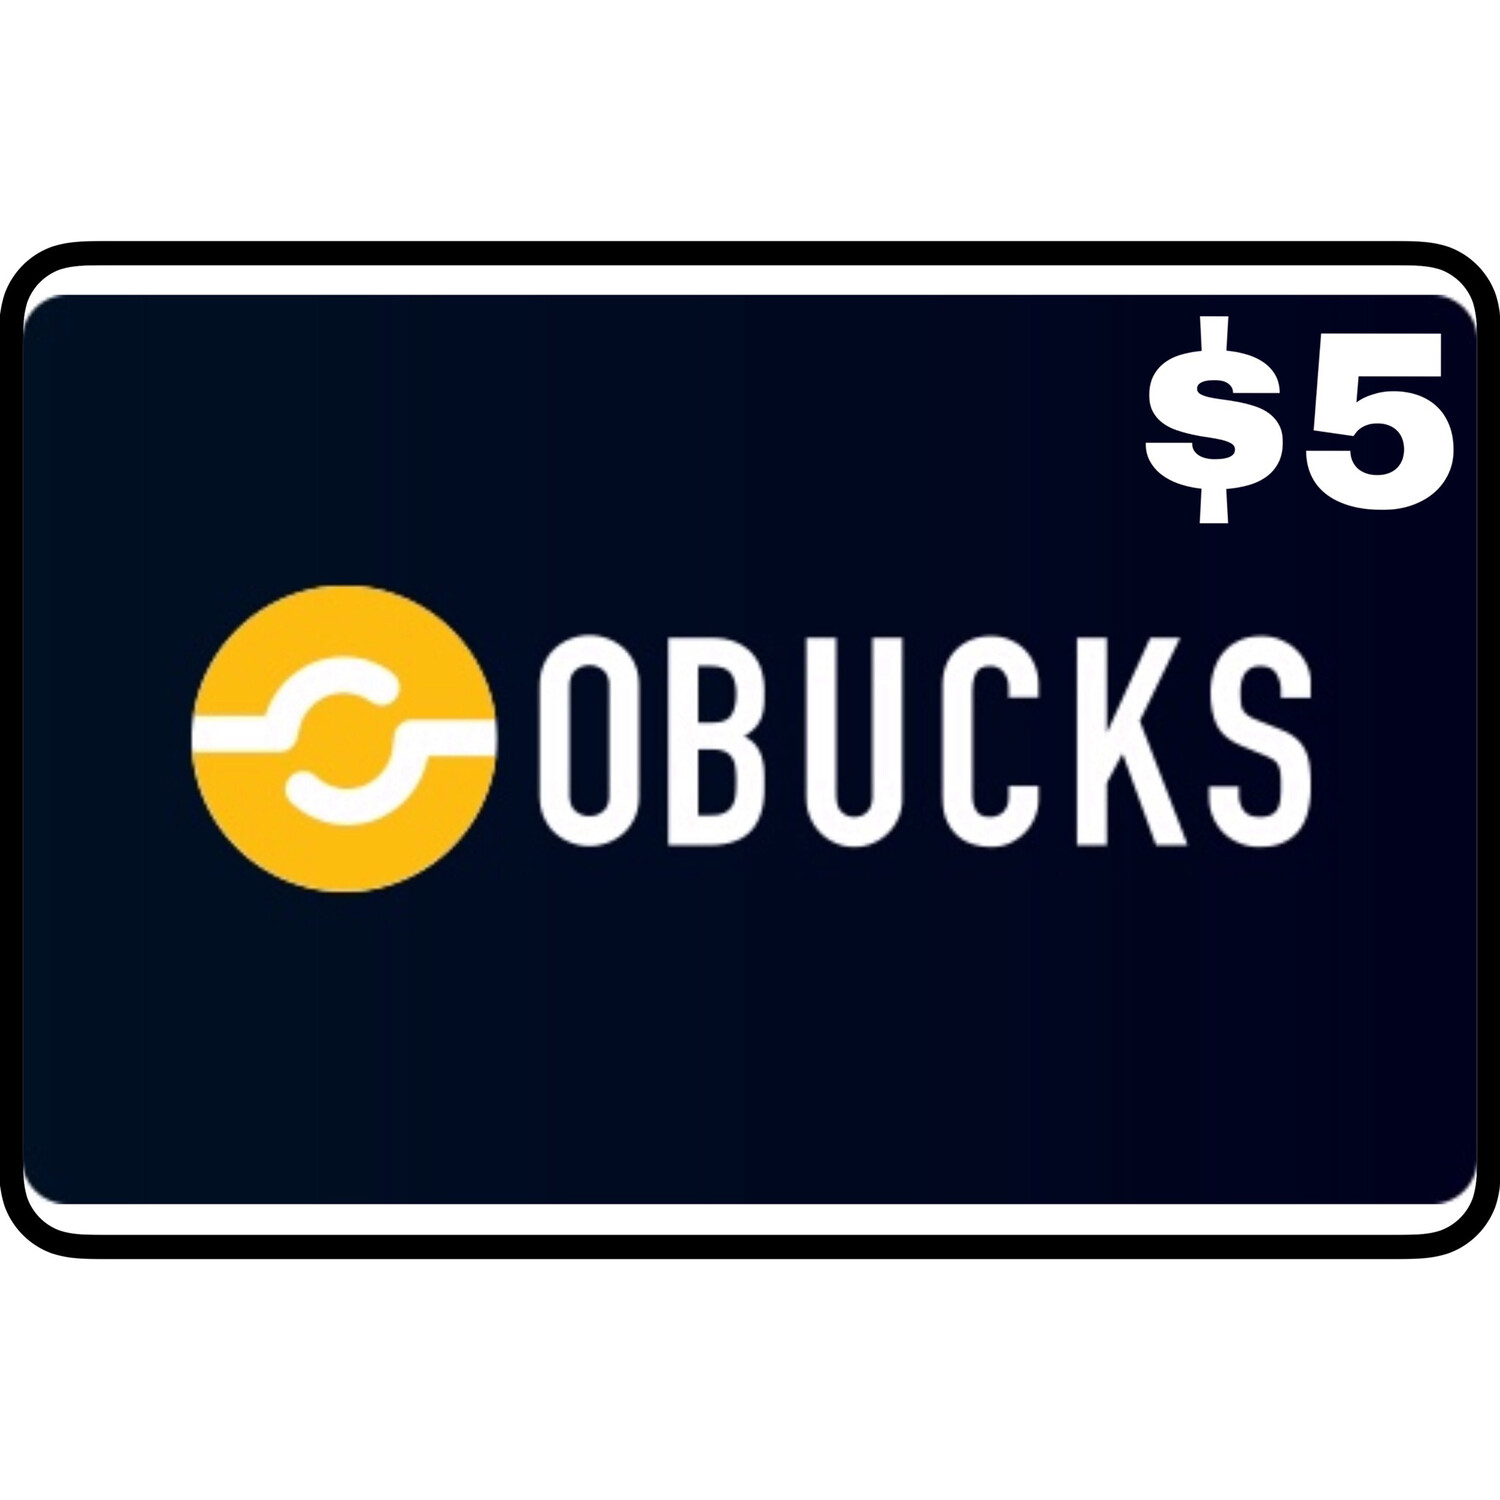 Openbucks Gift Card $5 (Obucks)